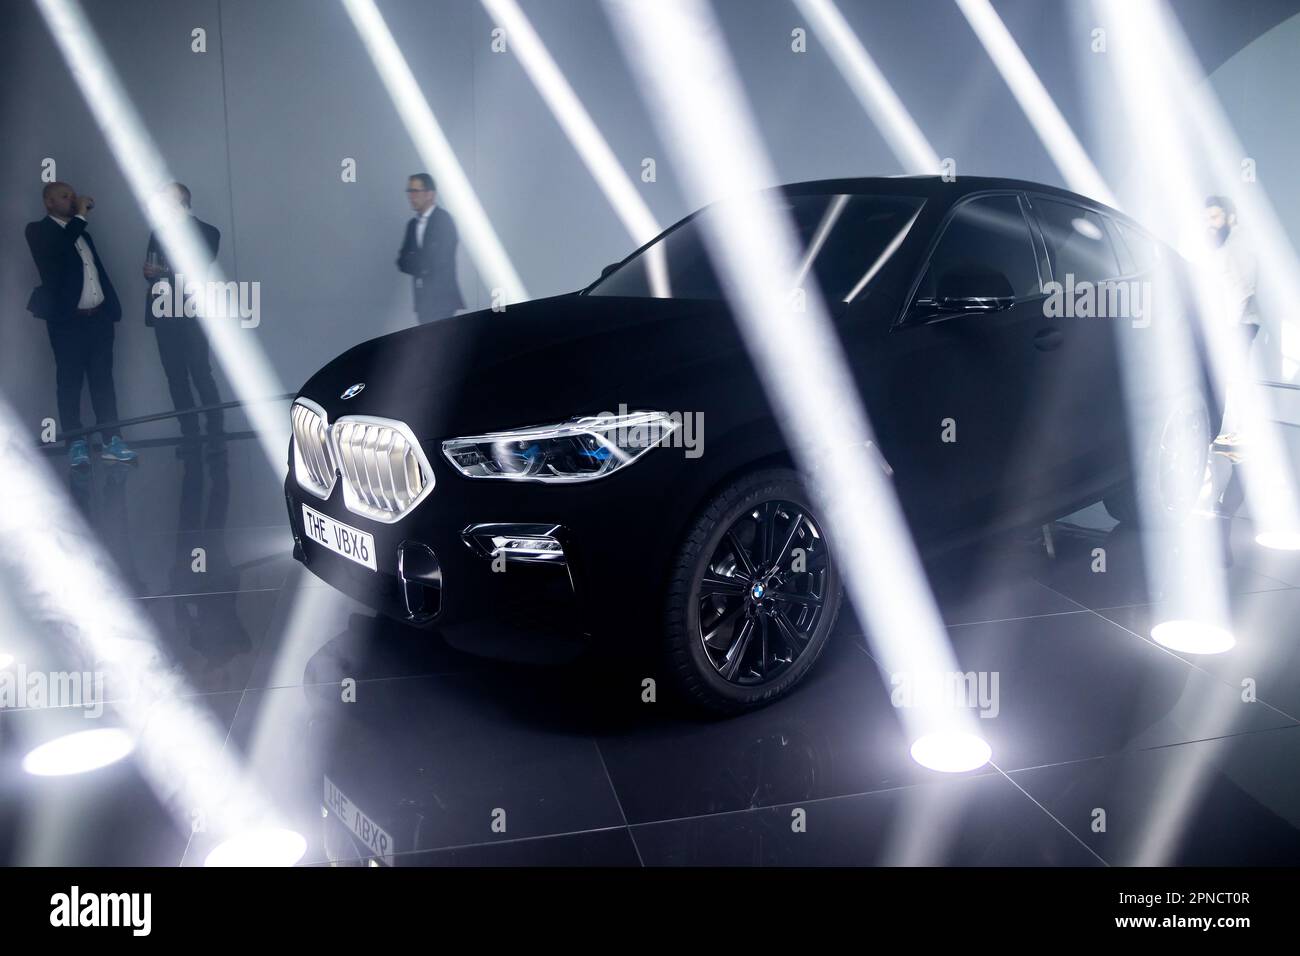 El coche más negro del mundo es el BMW X6 Vantablack